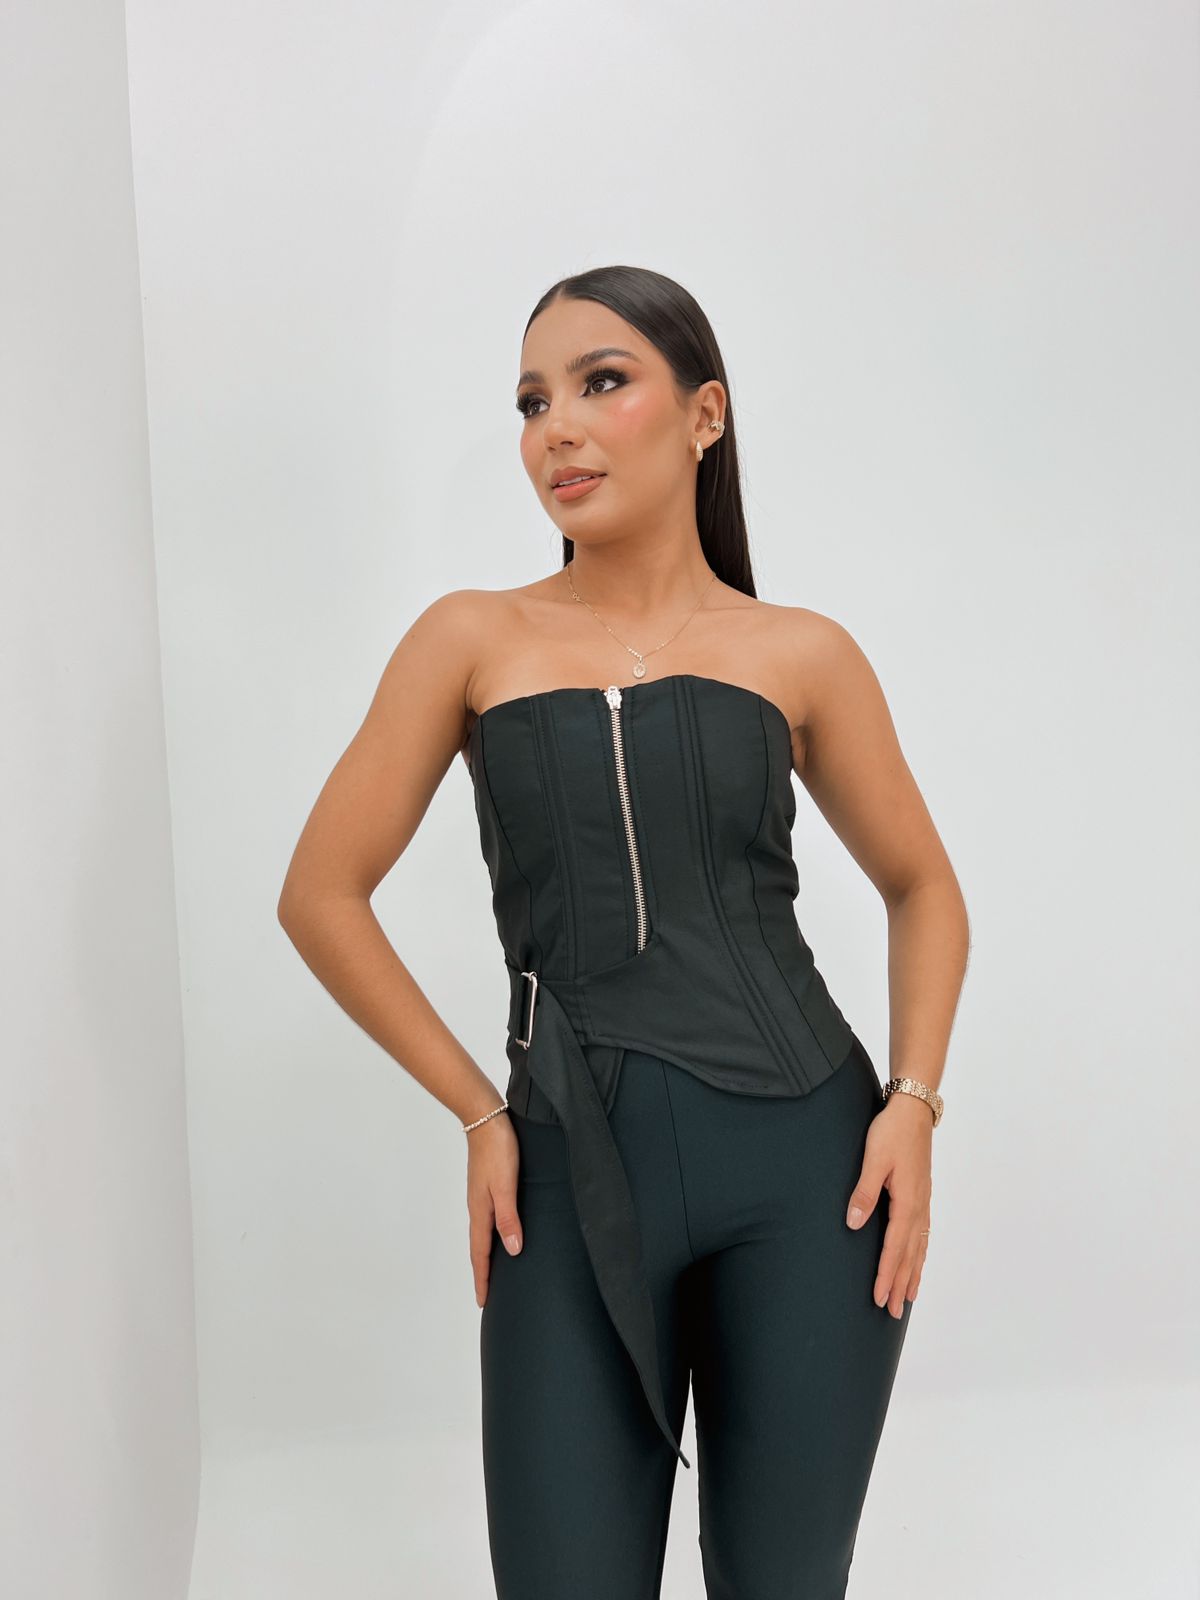 Top corset negro con cremallera frontal, ideal para un look sofisticado y moderno, combinado con pantalones ajustados para resaltar la figura.